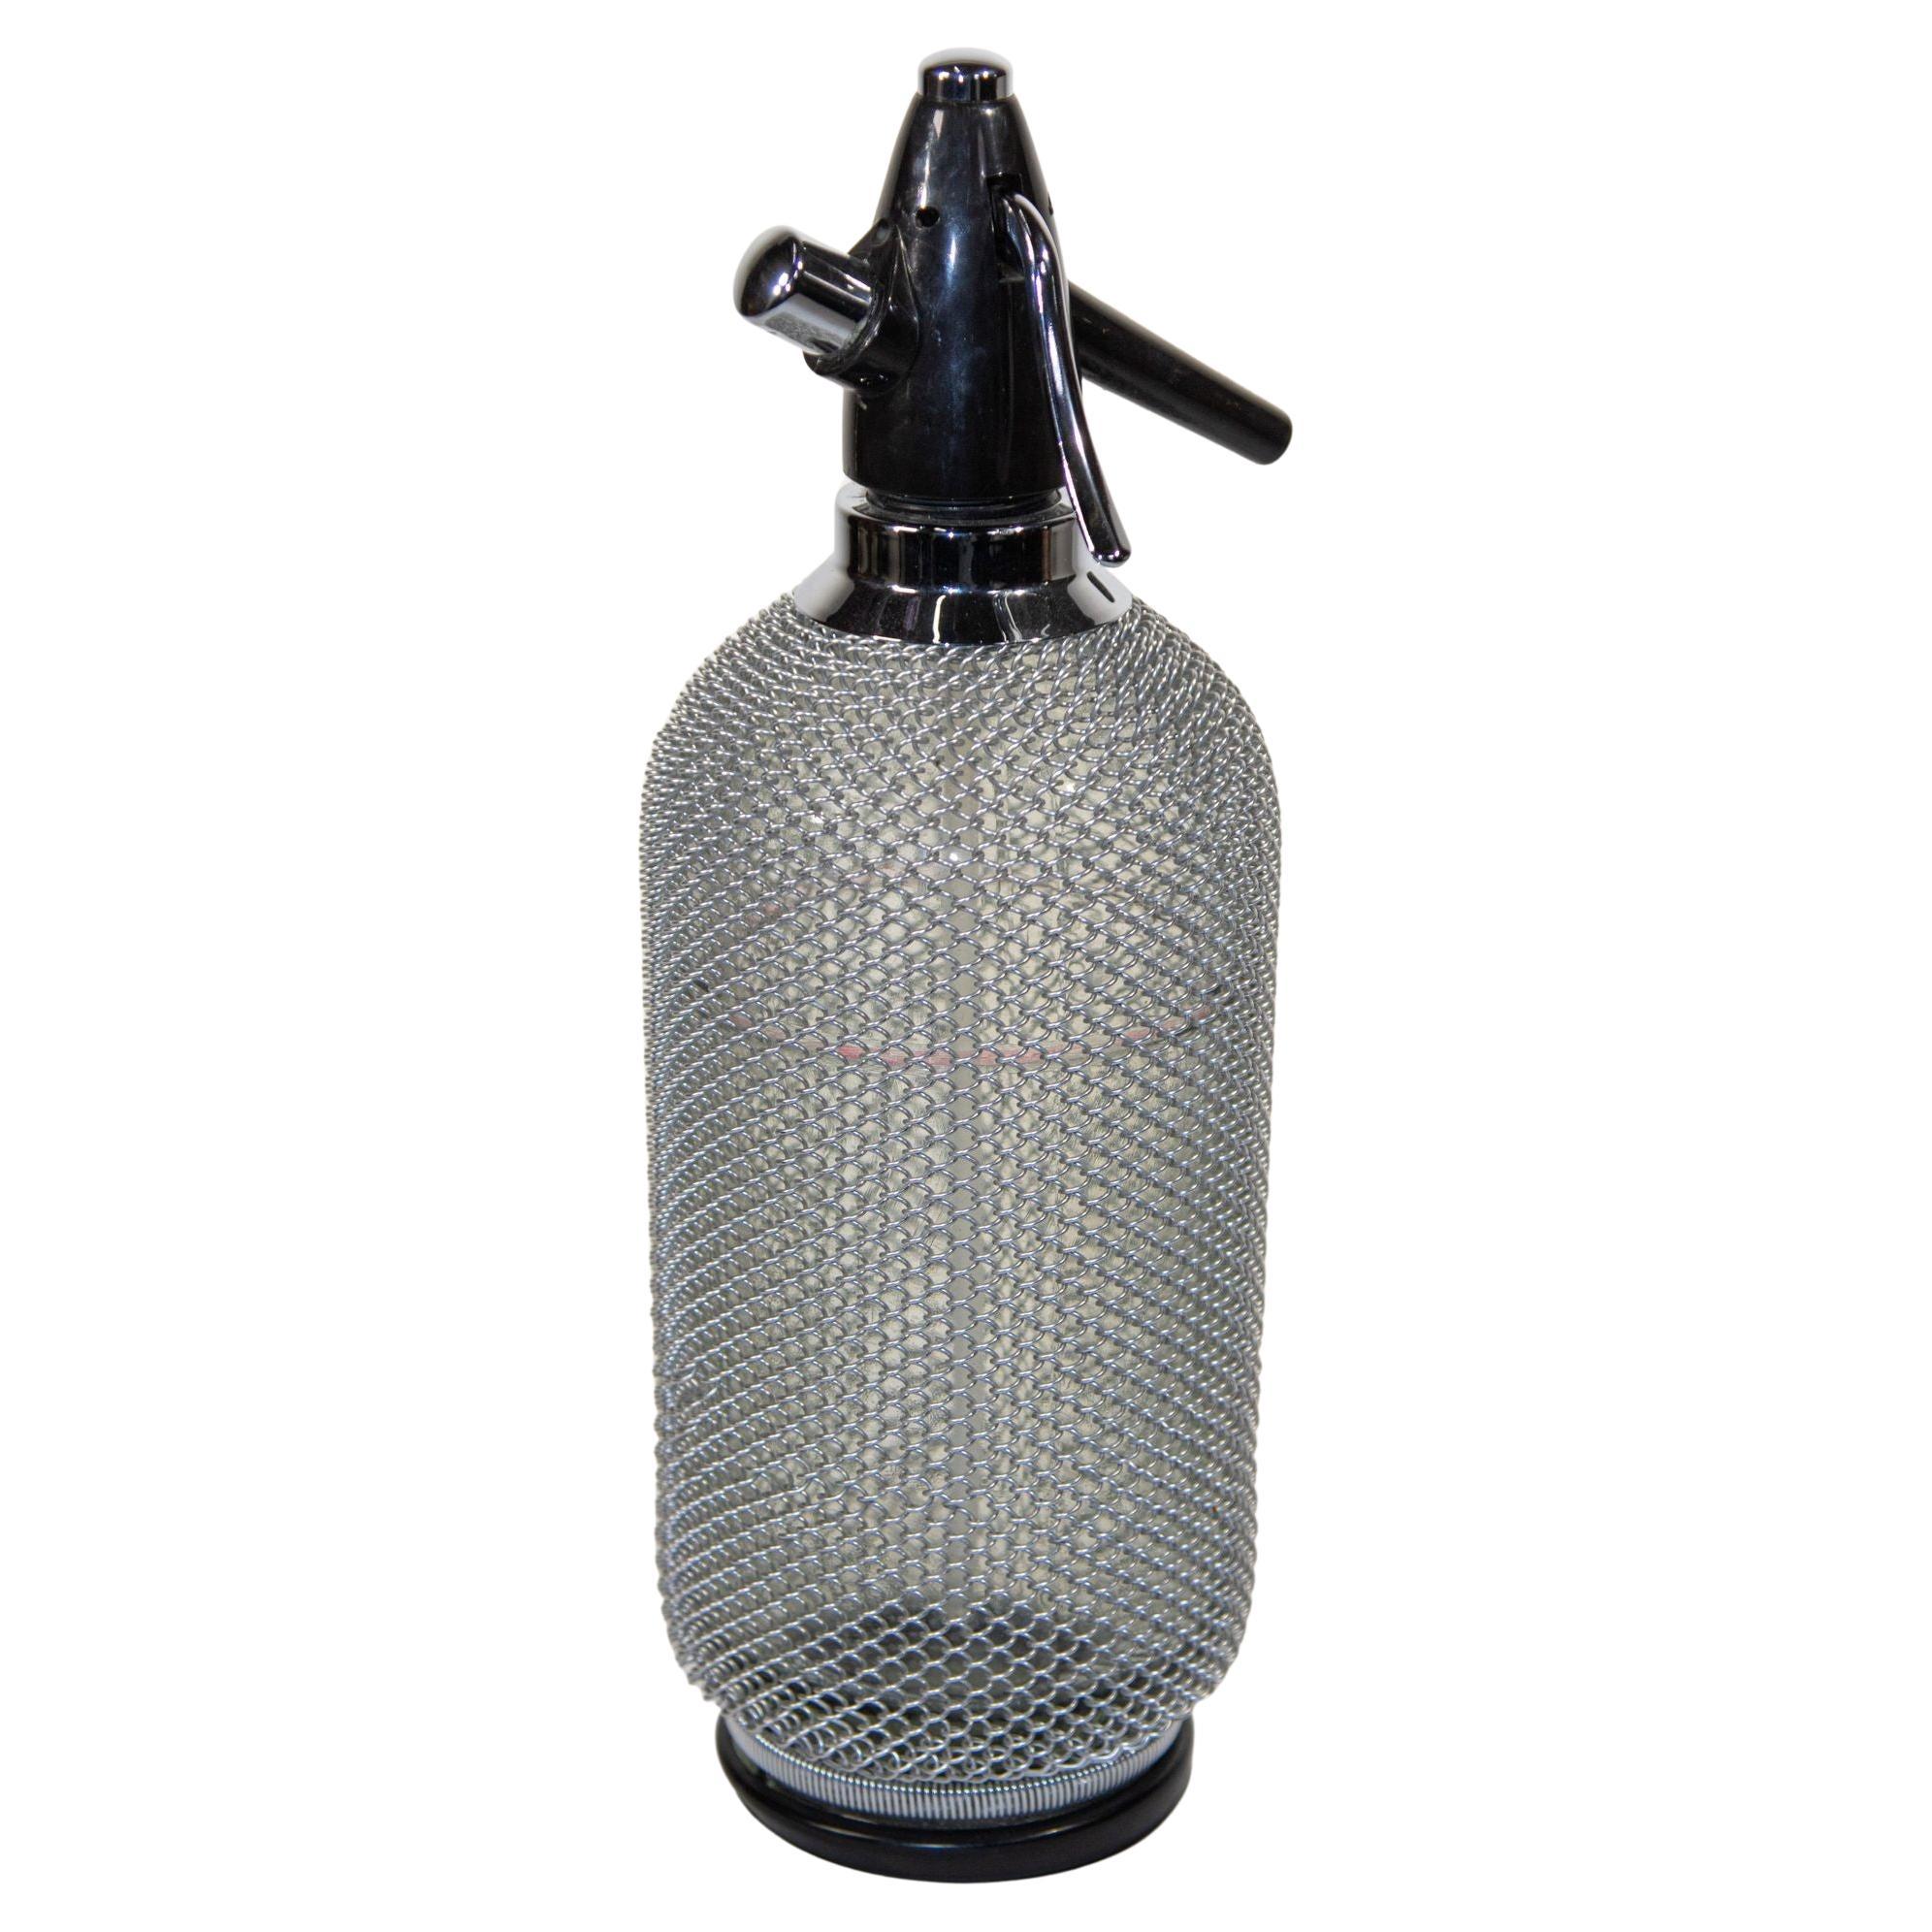 Vintage Classic Siphon Soda Seltzer Glass Bottle with Wire Mesh (bouteille en verre avec grillage)